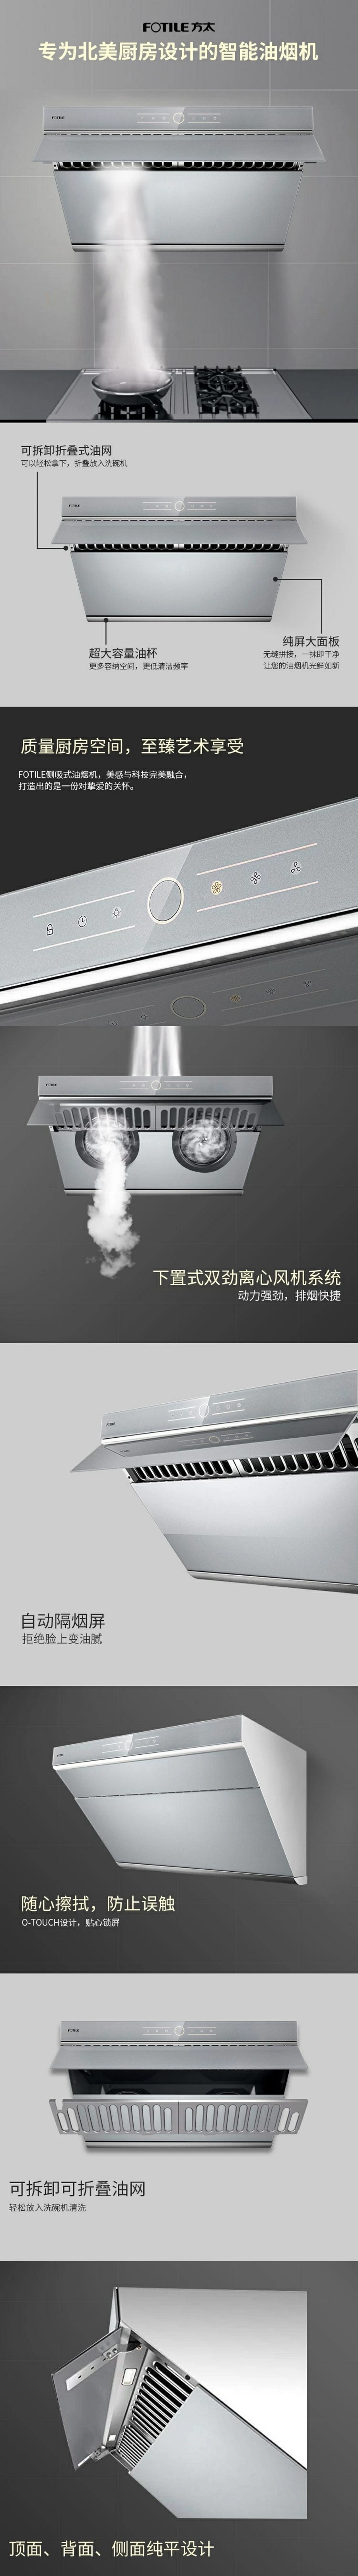 中国 FOTILE 方太 JQG7501.G 30寸侧吸式油烟机 | 850CFM大风量 | 家用抽油烟机 | 触屏式开关 | 全自动隔烟屏 | 银瑞灰